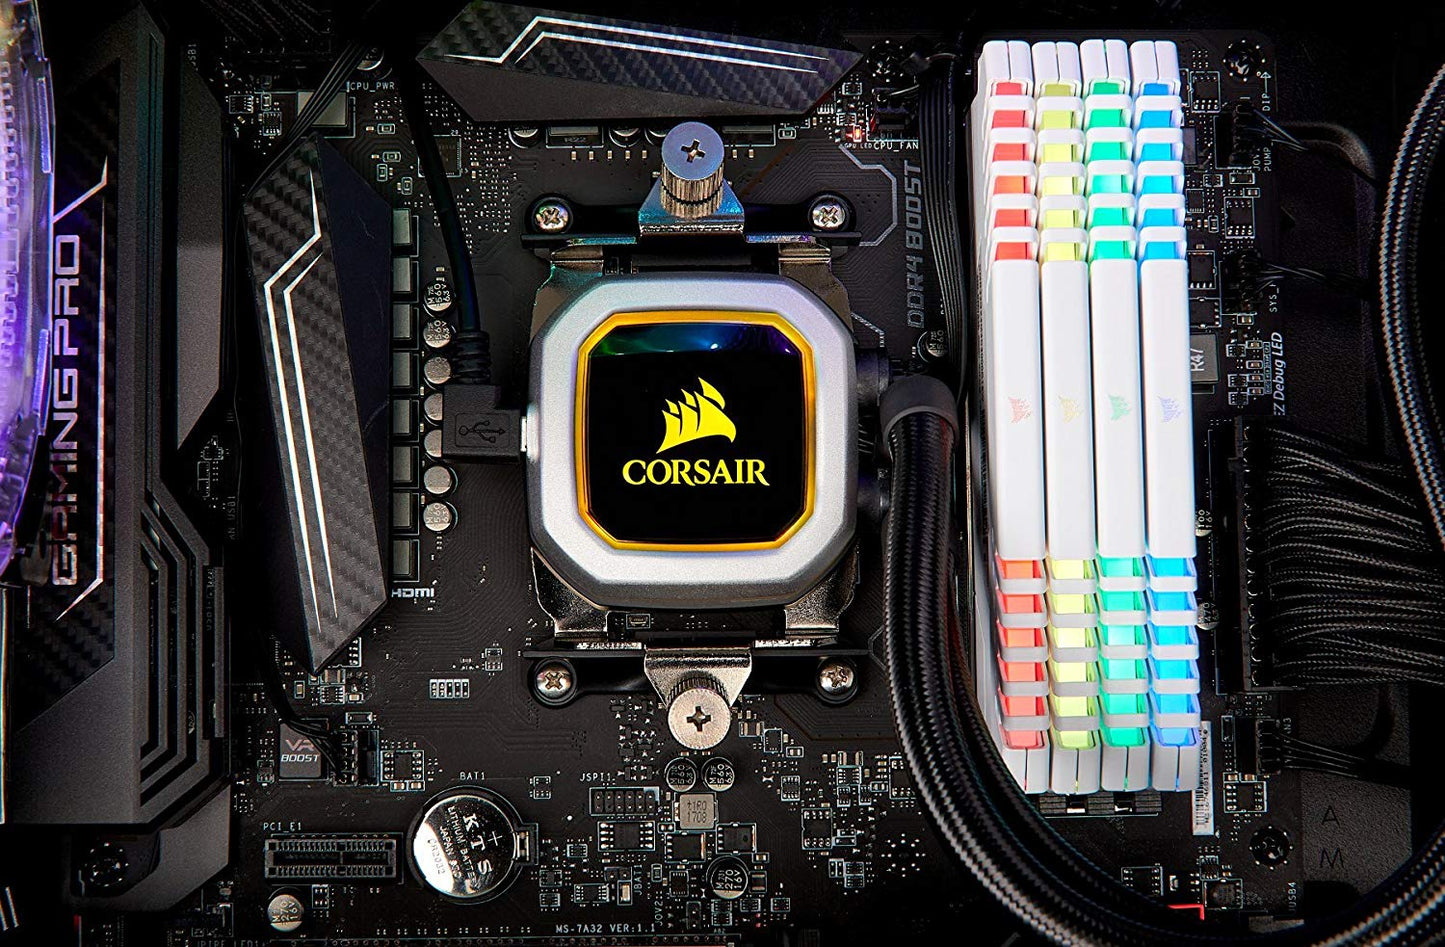 CORSAIR HYDRO Series H100i PRO RGB AIO Liquid CPU Cooler, 240mm, Dual ML120 PWM Fans, Intel 115x/2066, AMD AM4